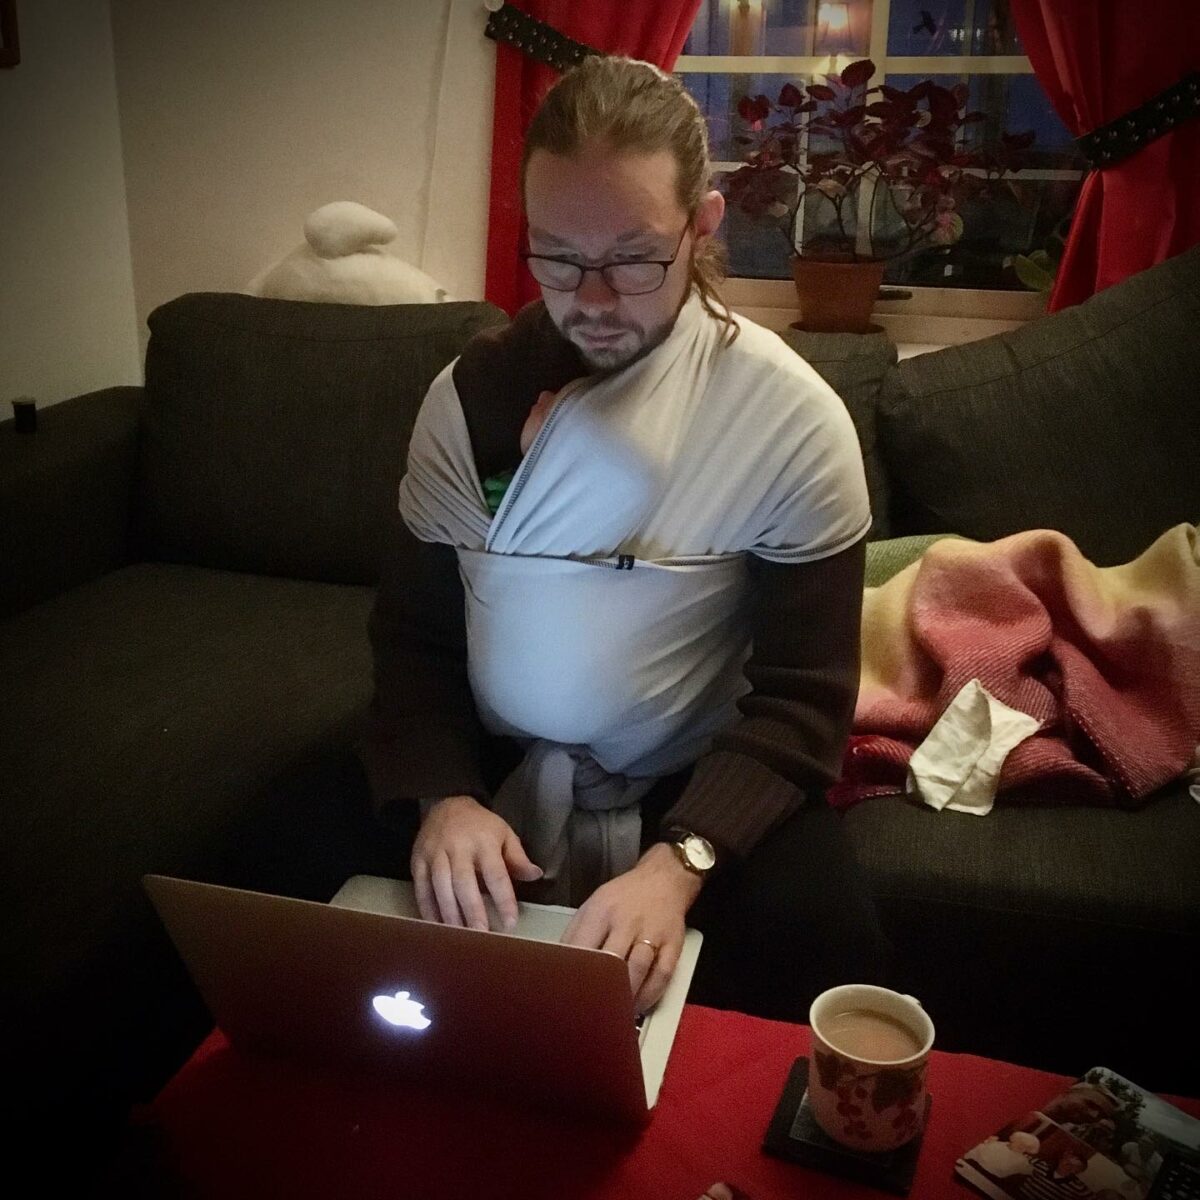 Emanuel med bebis i sjal på bröstet sitter och skriver på en dator